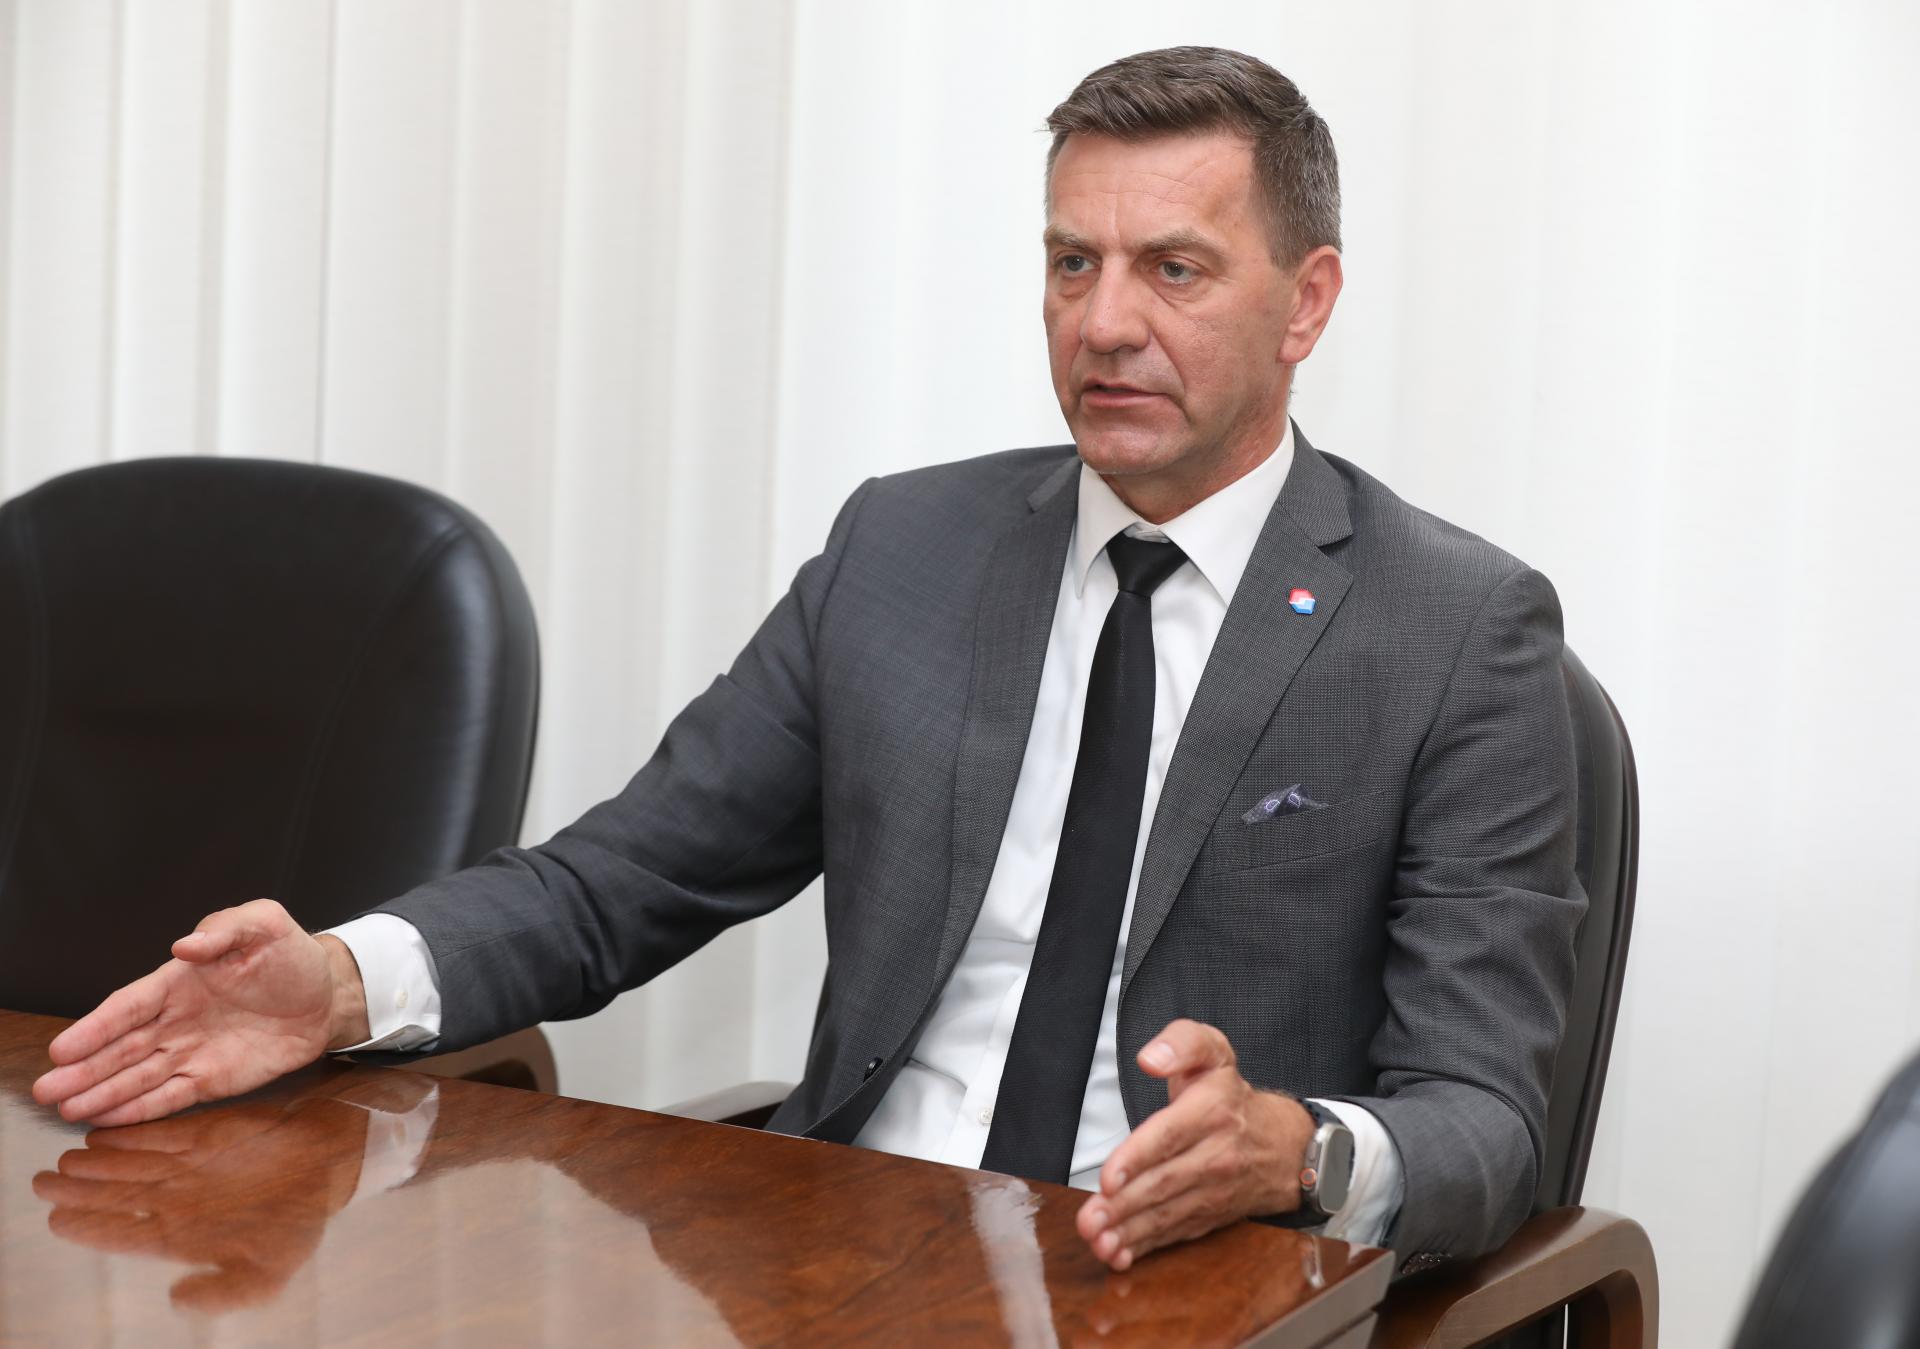 Podľa Eximbanky je najvyšší čas posilniť reputáciu Slovenska v zahraničí